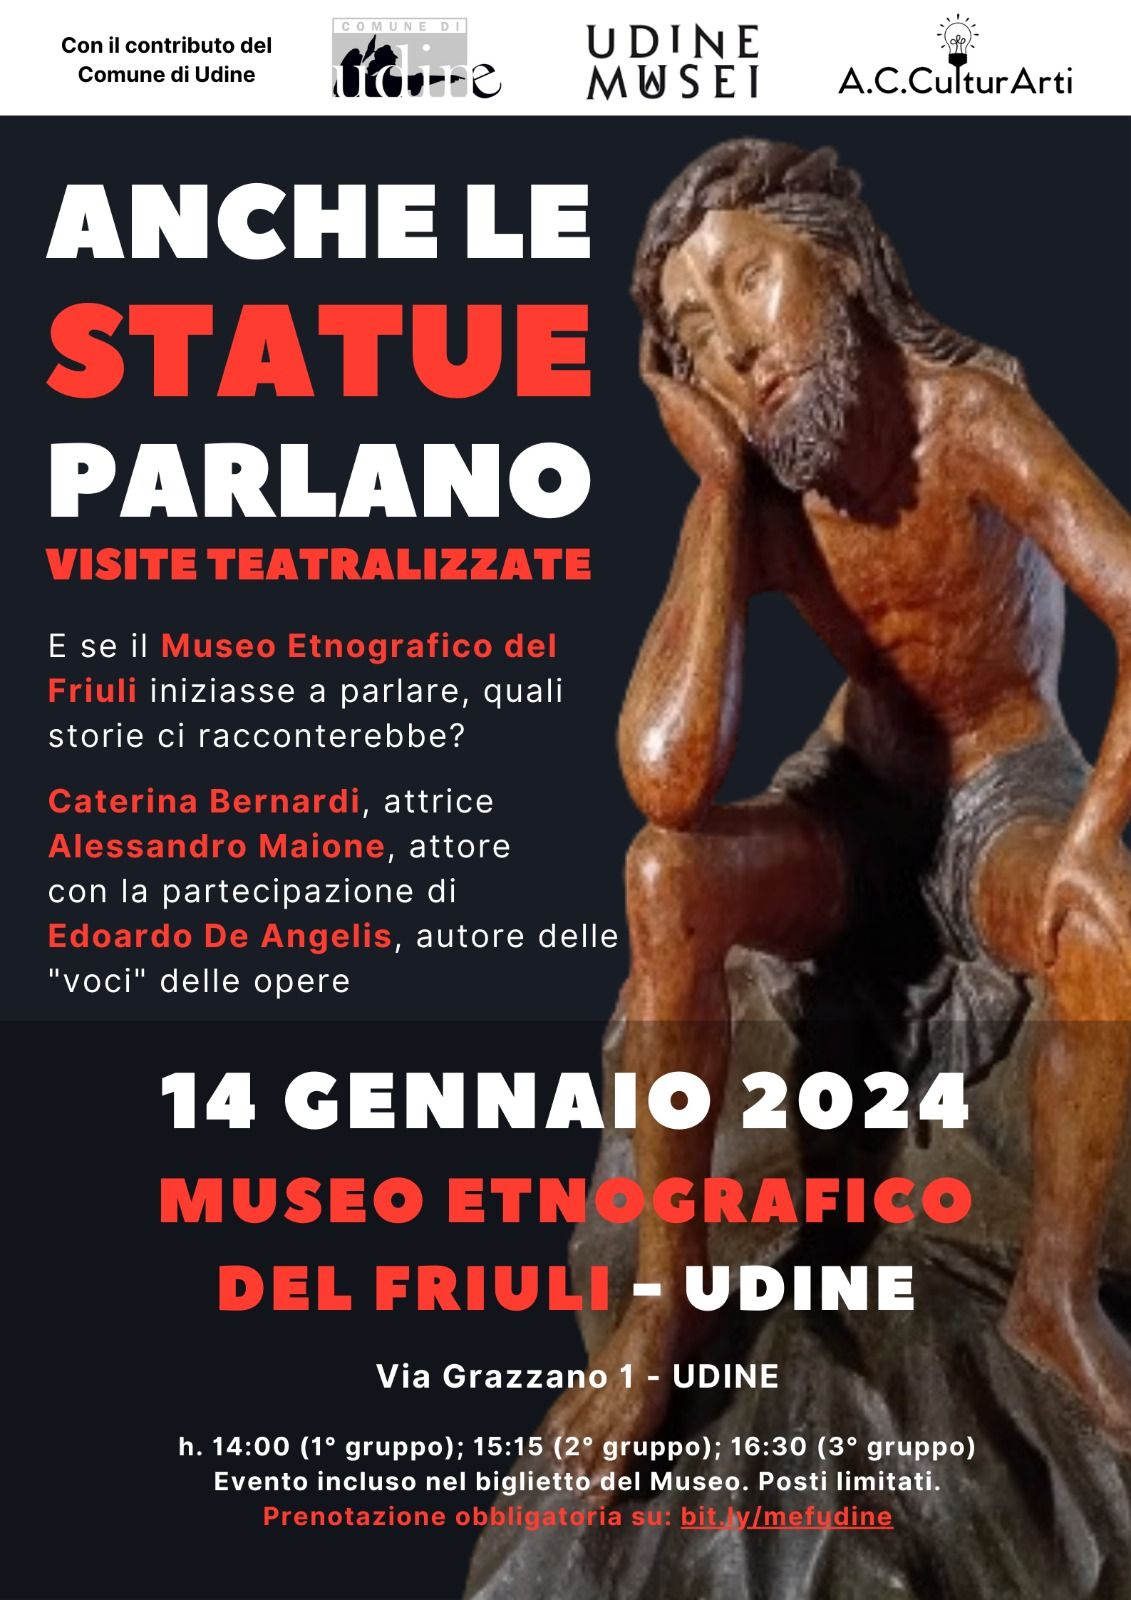 Anche le statue parlano il 7 gennaio a Casa Cavazzini ed 14 gennaio al Museo ETNOGRAFICO DEL FRIULI